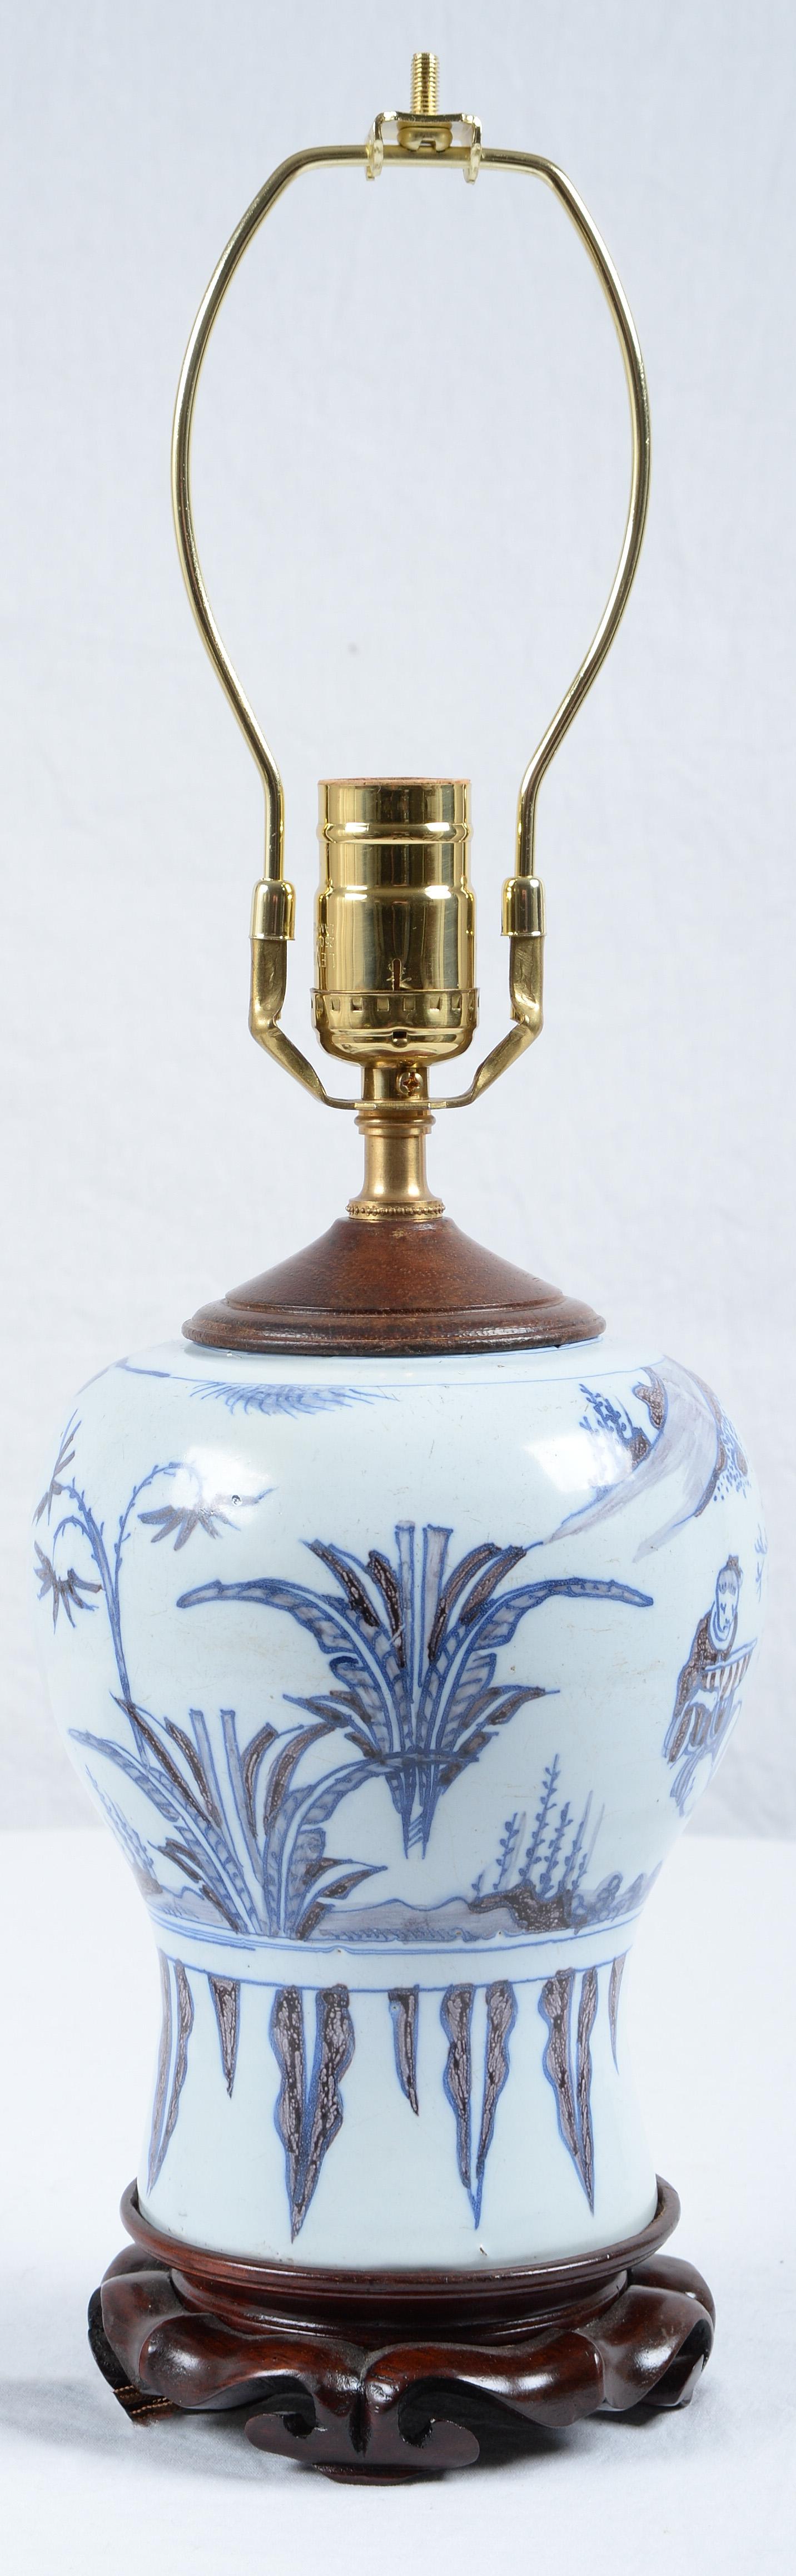 Vase balustre en faïence de Delft bleu et blanc de la fin du XVIIe siècle, monté en lampe et nouvellement électrifié.
Décor à l'imitation d'un vase chinois Ming avec une sauge, des rochers et de la végétation, monté sur une base en bois. 
Les